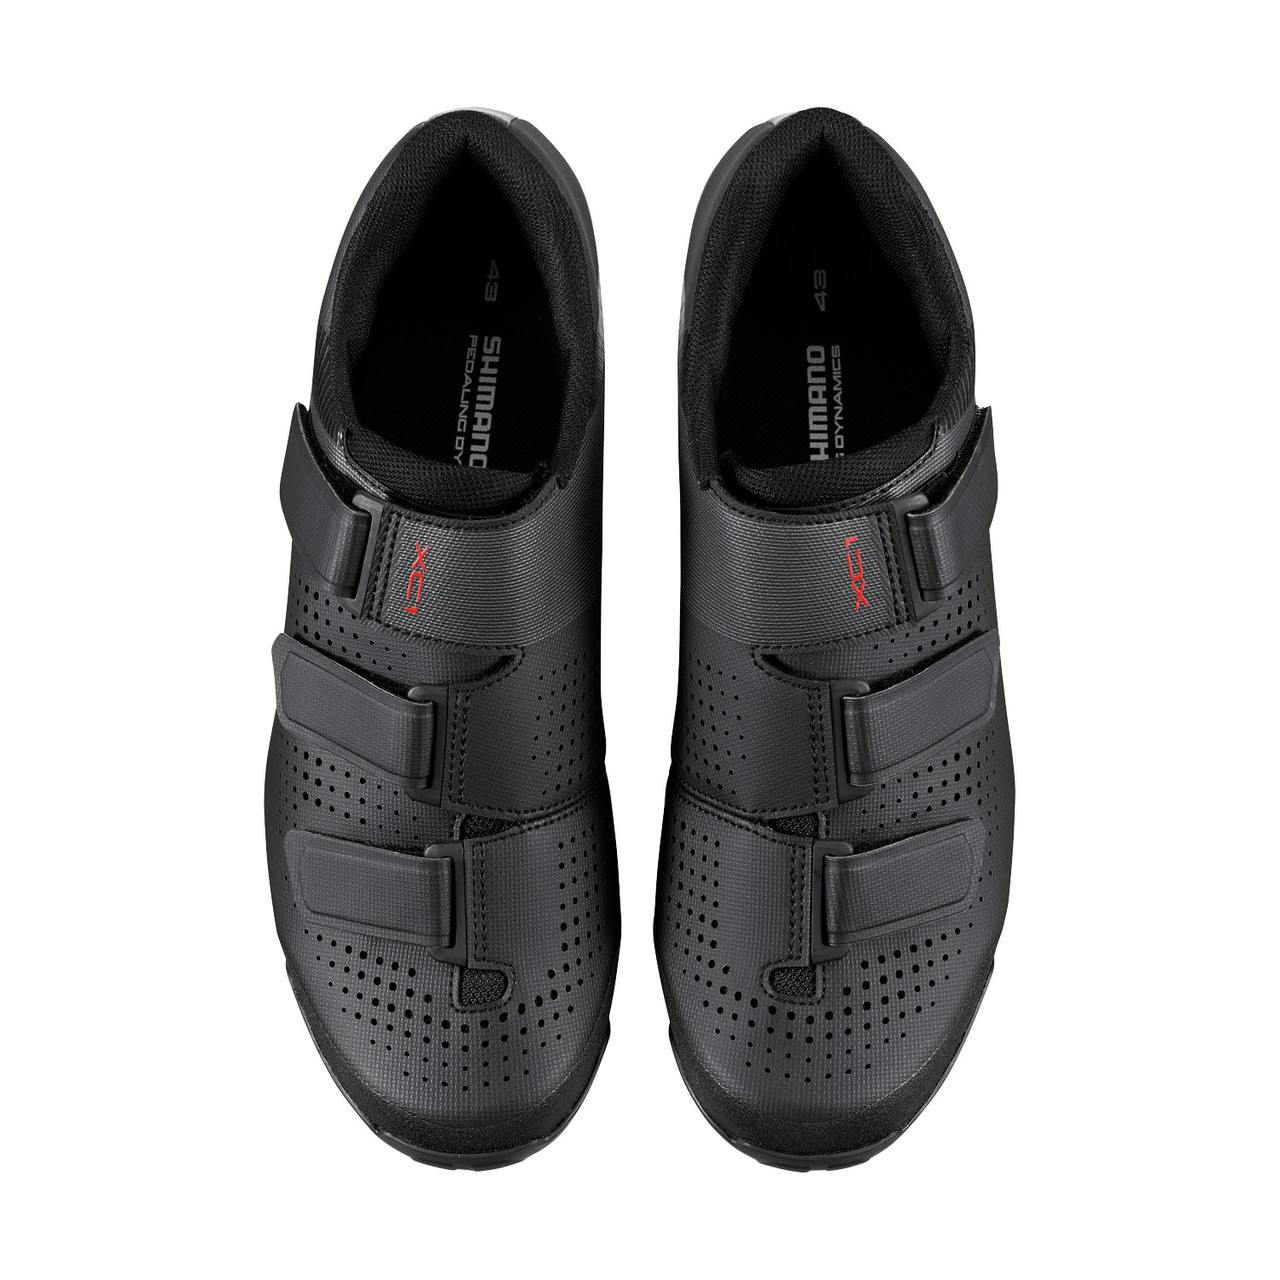 XC100 Cycling Shoes Black